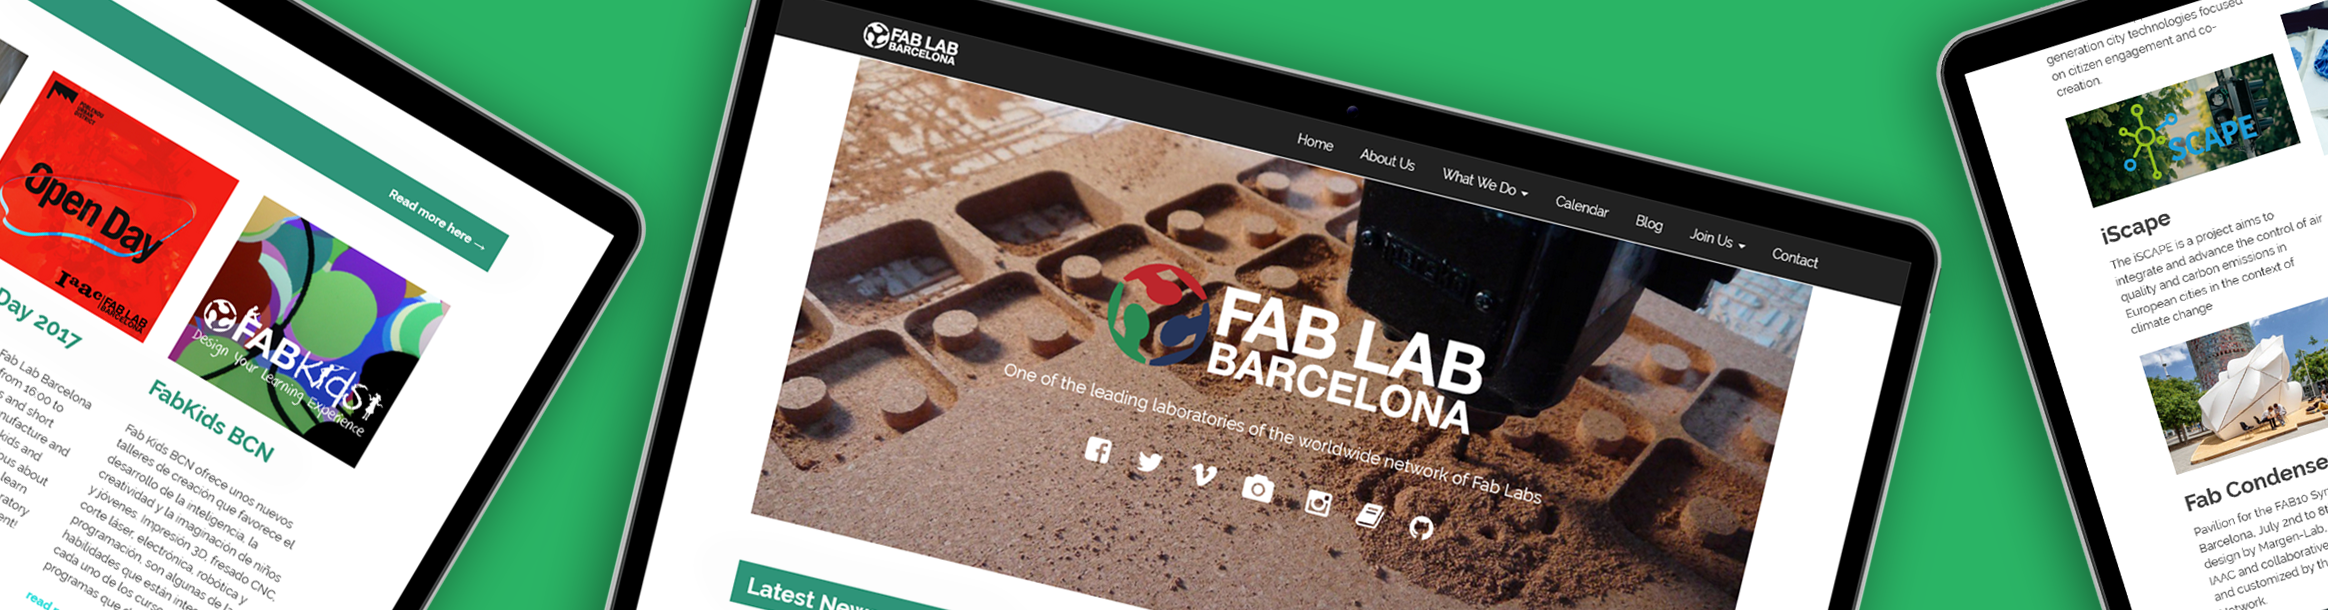 FabLab Barcelona website project header image